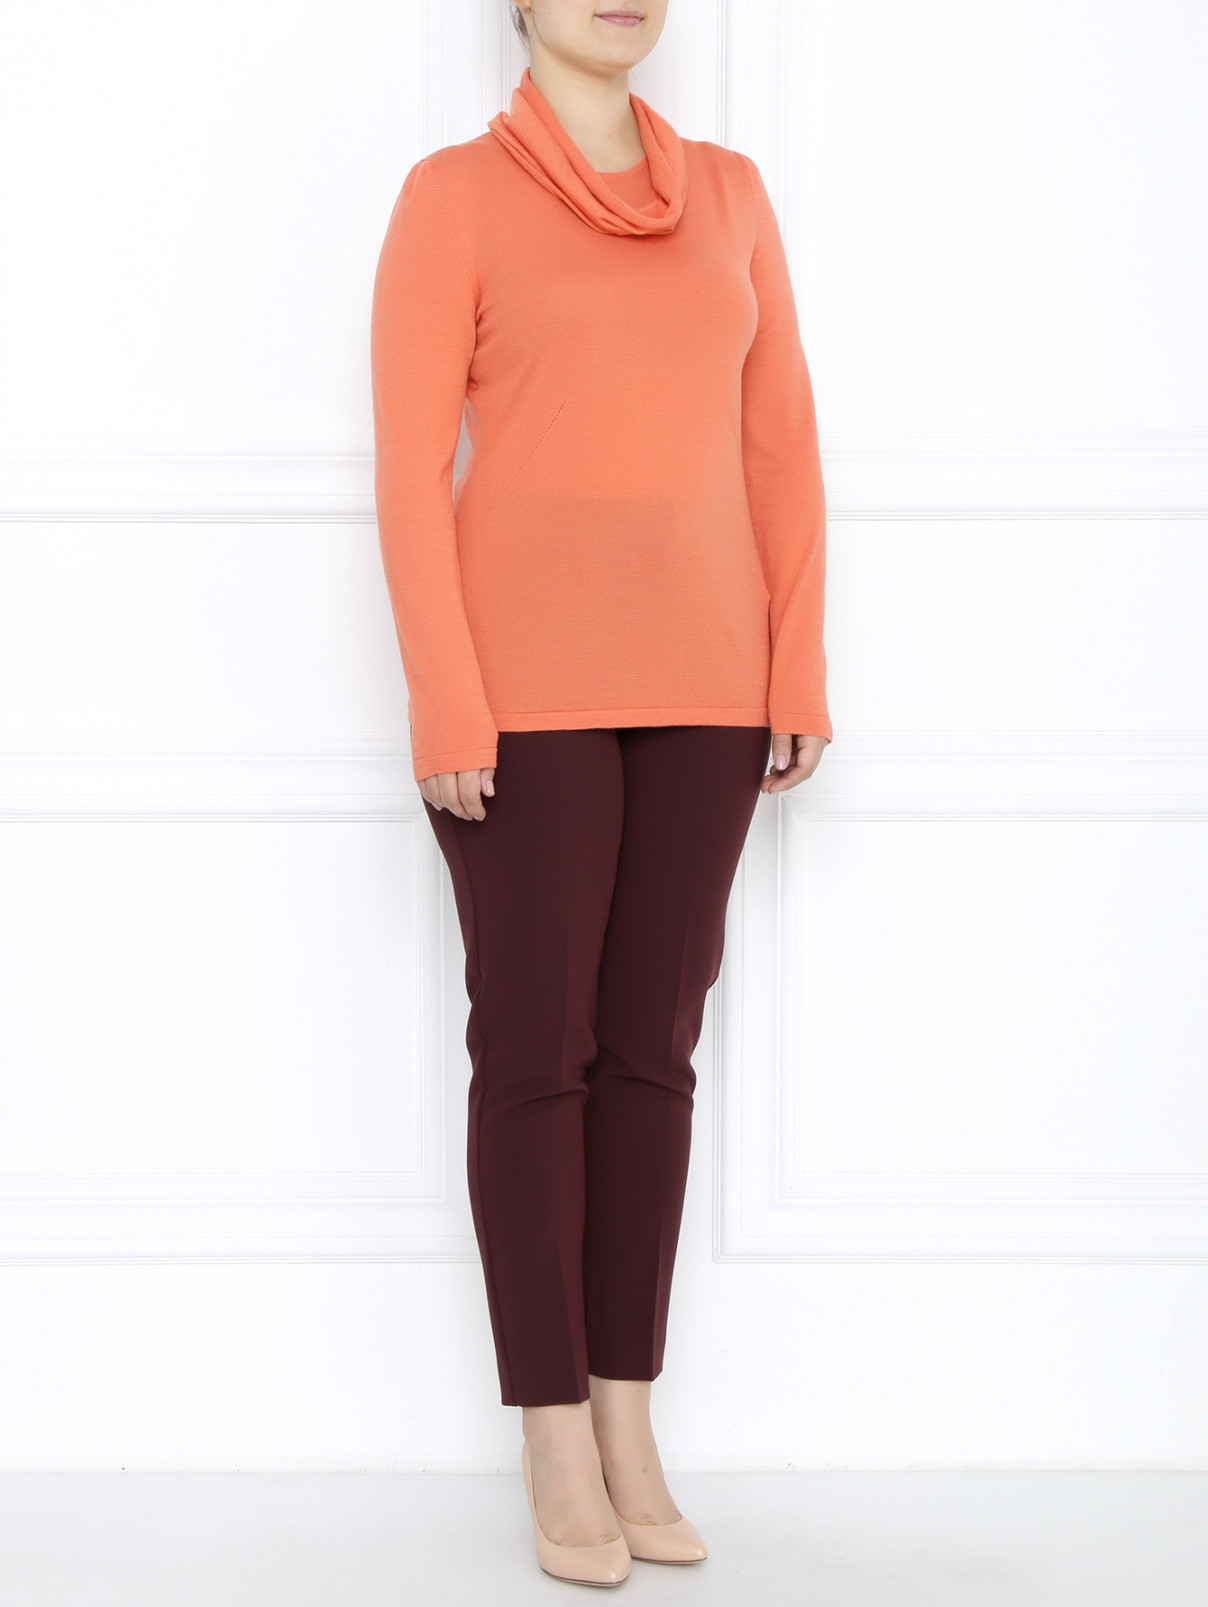 Джемпер из шерсти и шелка с длинным рукавом Marina Rinaldi  –  Модель Общий вид  – Цвет:  Оранжевый